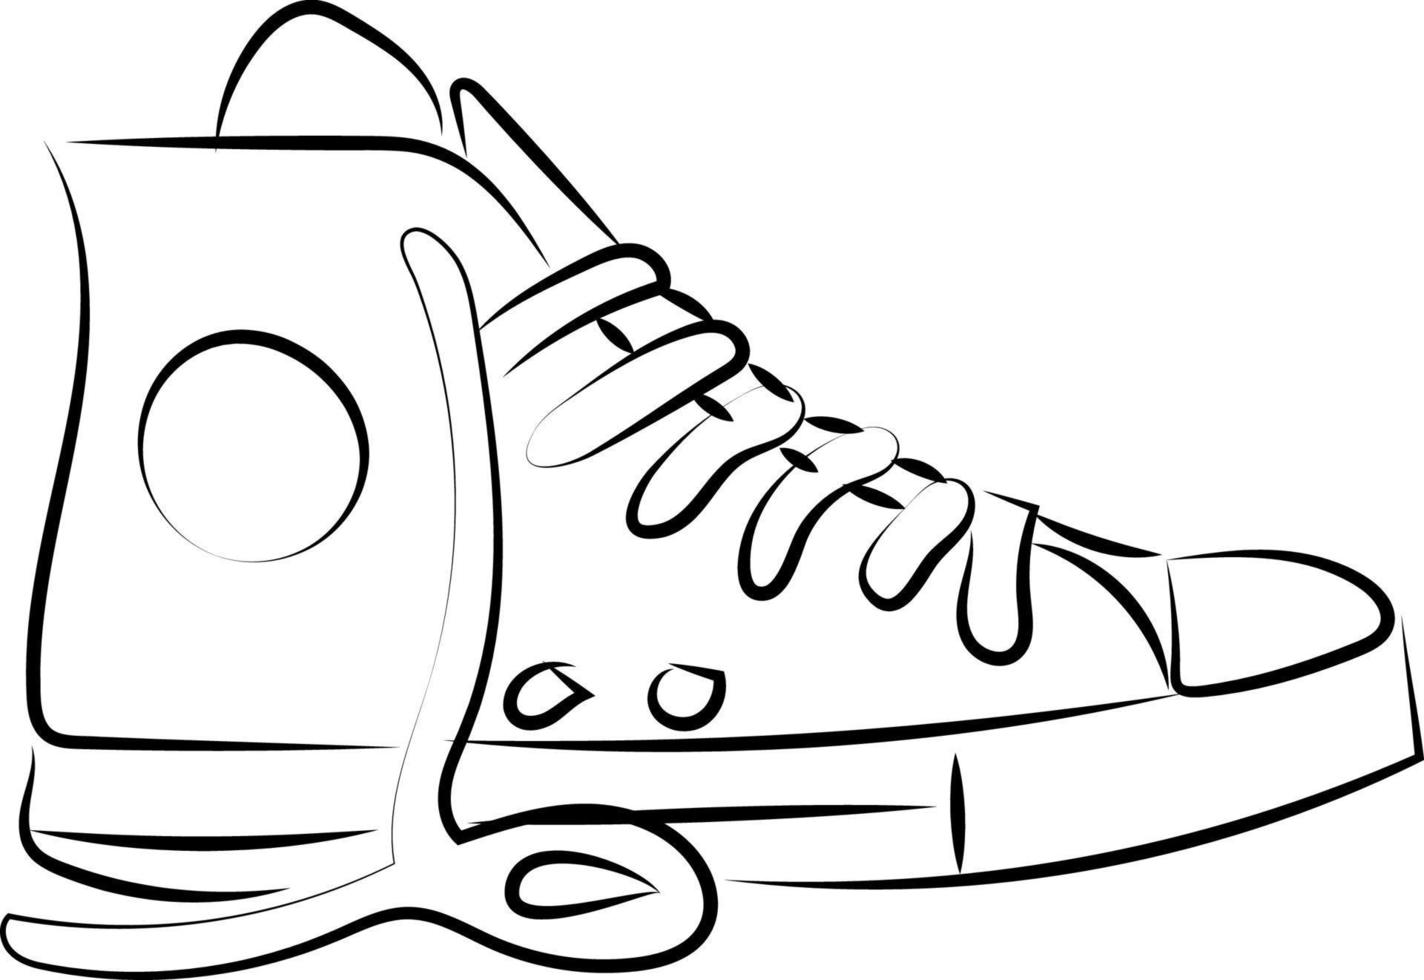 Zeichnung von Sneaker, Illustration, Vektor auf weißem Hintergrund.